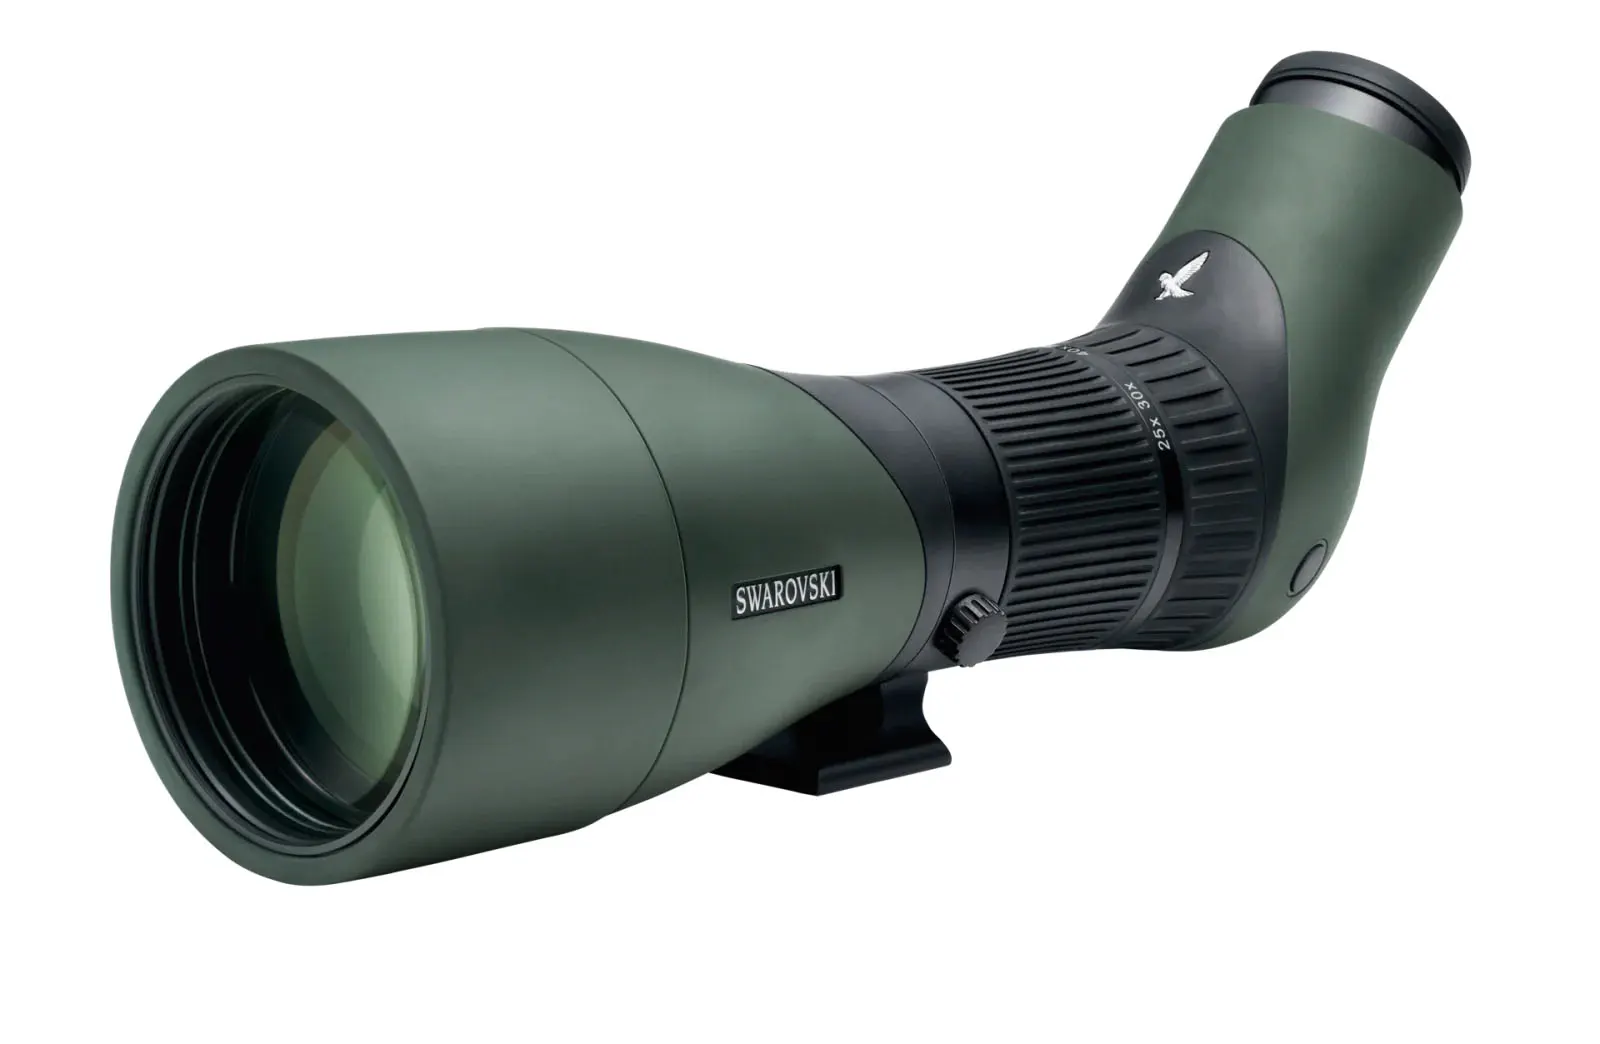 Swarovski ATX 85 spotting scope